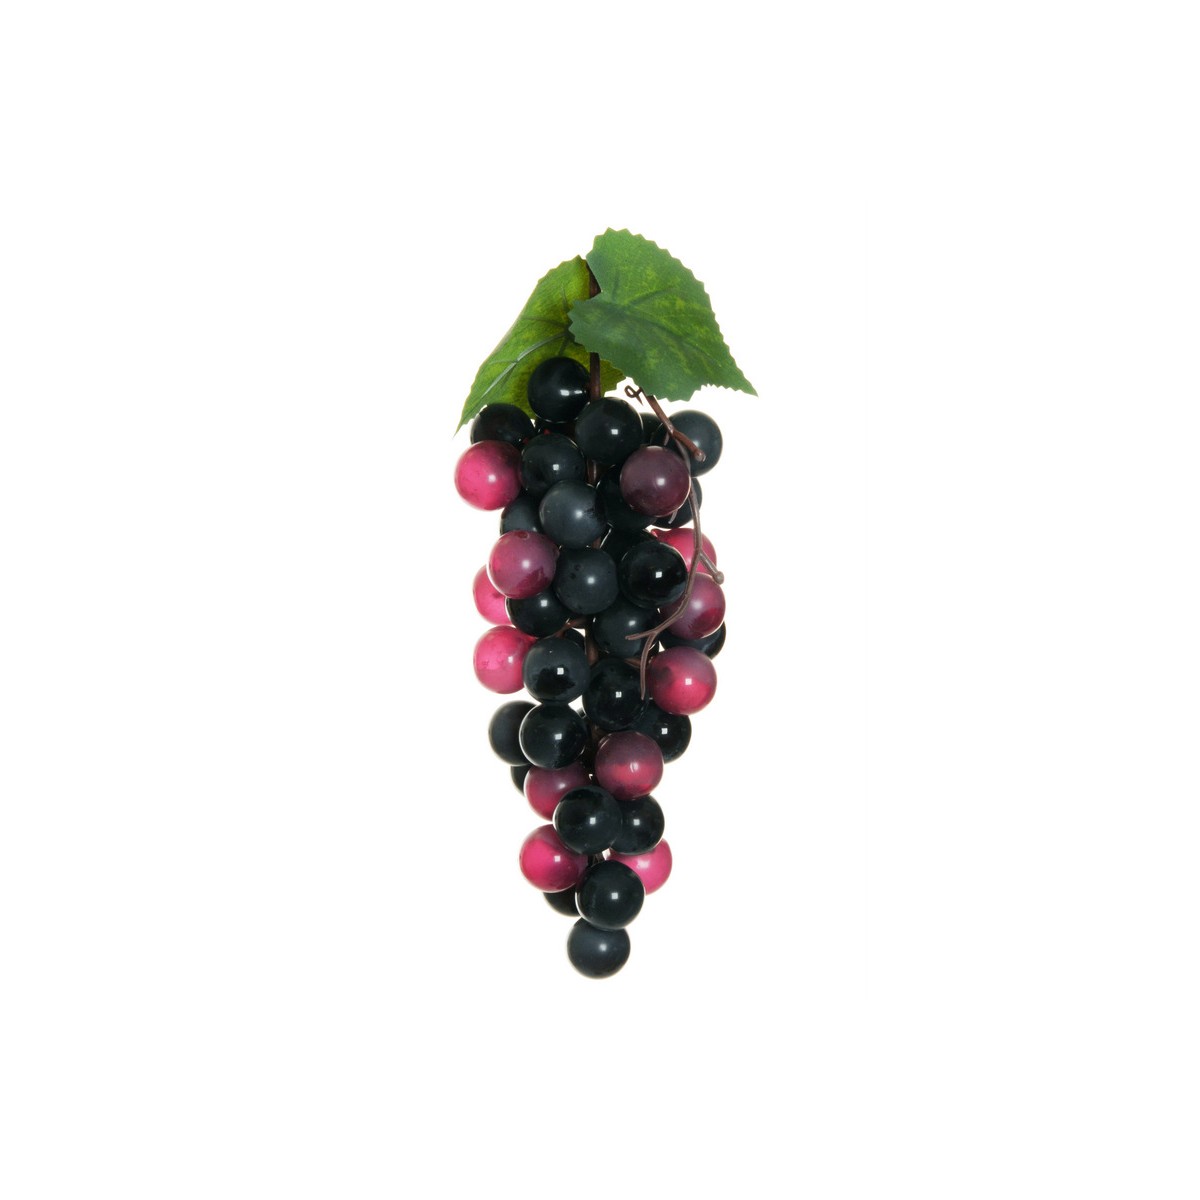 Grappolo uva — Frutta & Verdura Artificiale